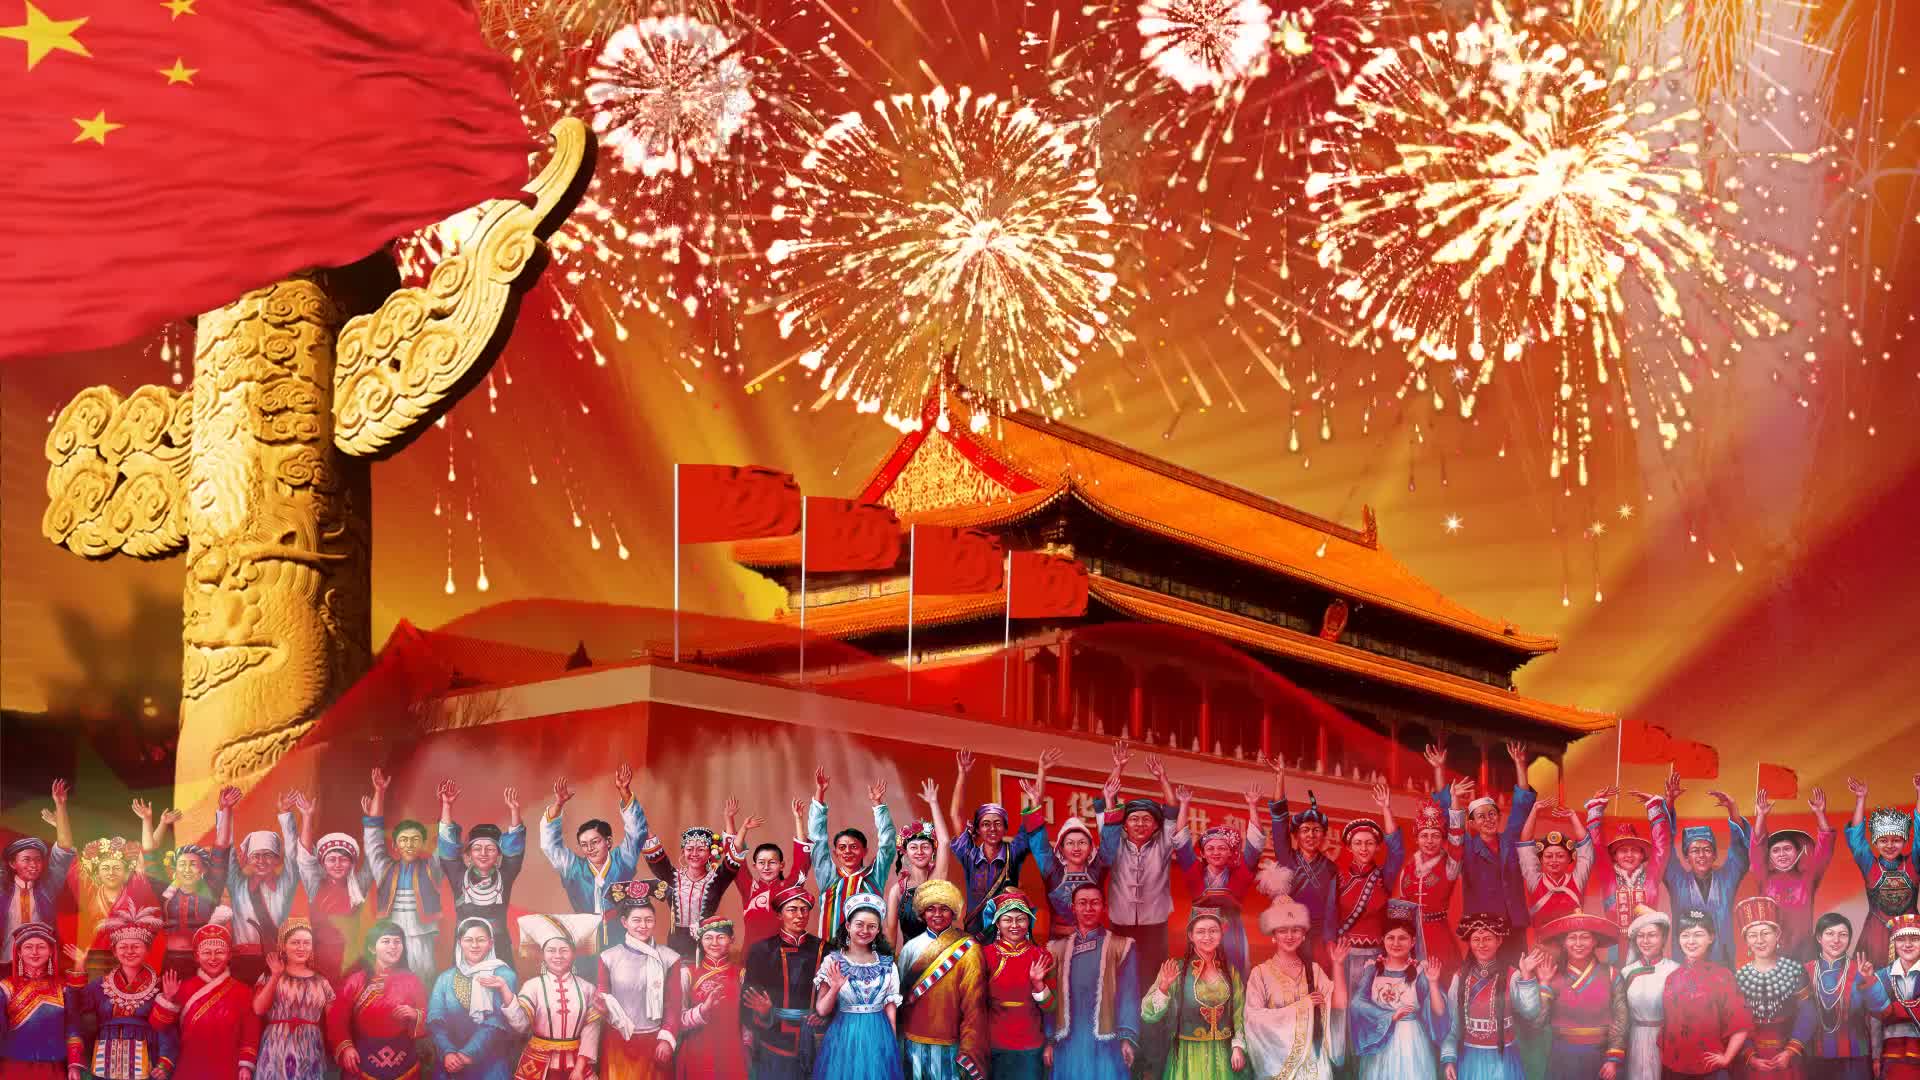 爱我中华配乐视频背景五十六个民族歌颂祖国红歌背景建党一百周年歌曲